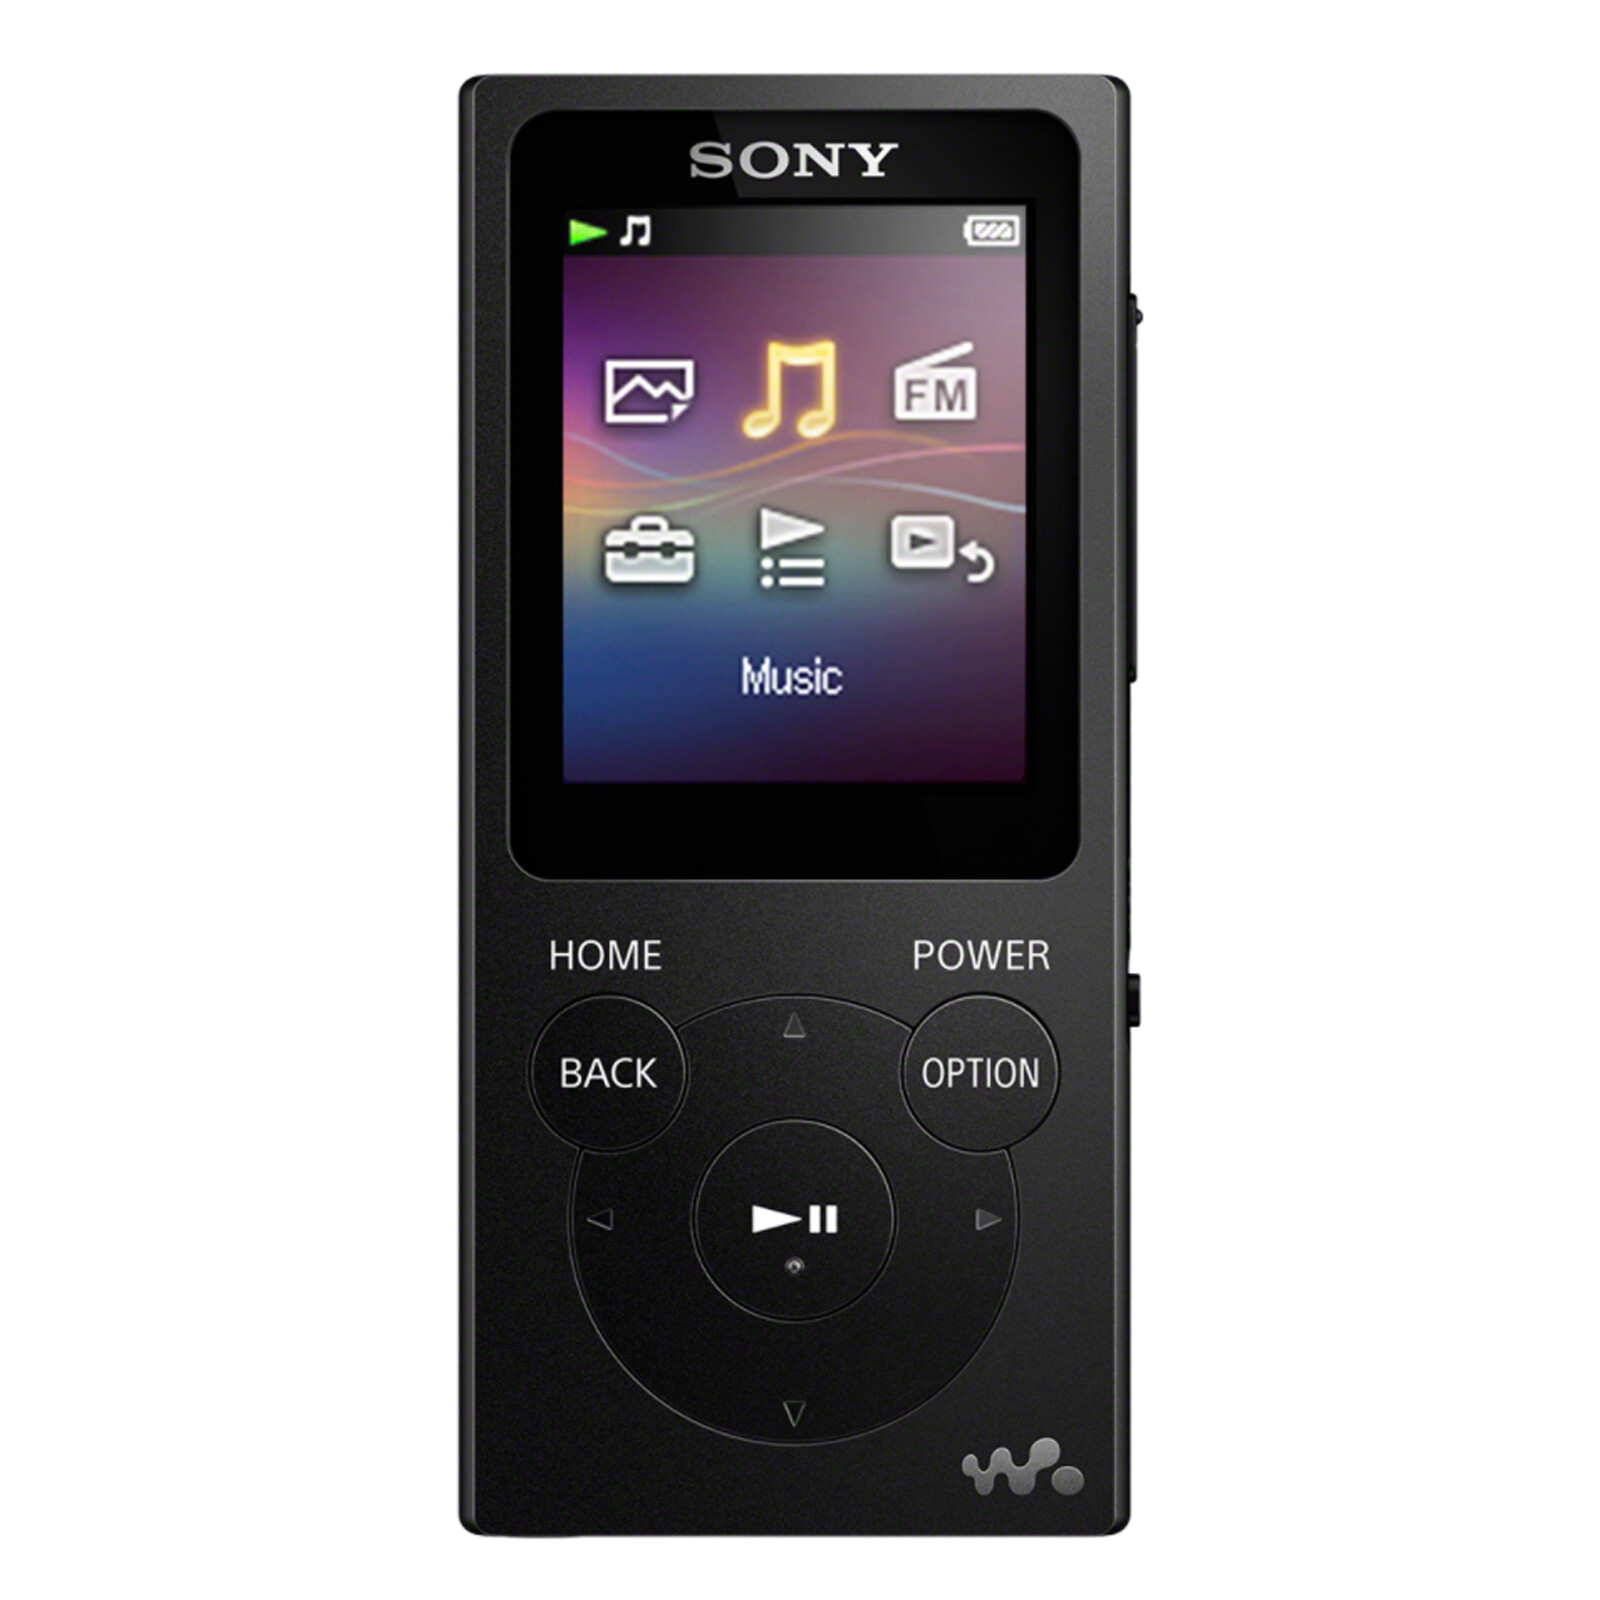 Sony NW-E393B 4GB Walkman